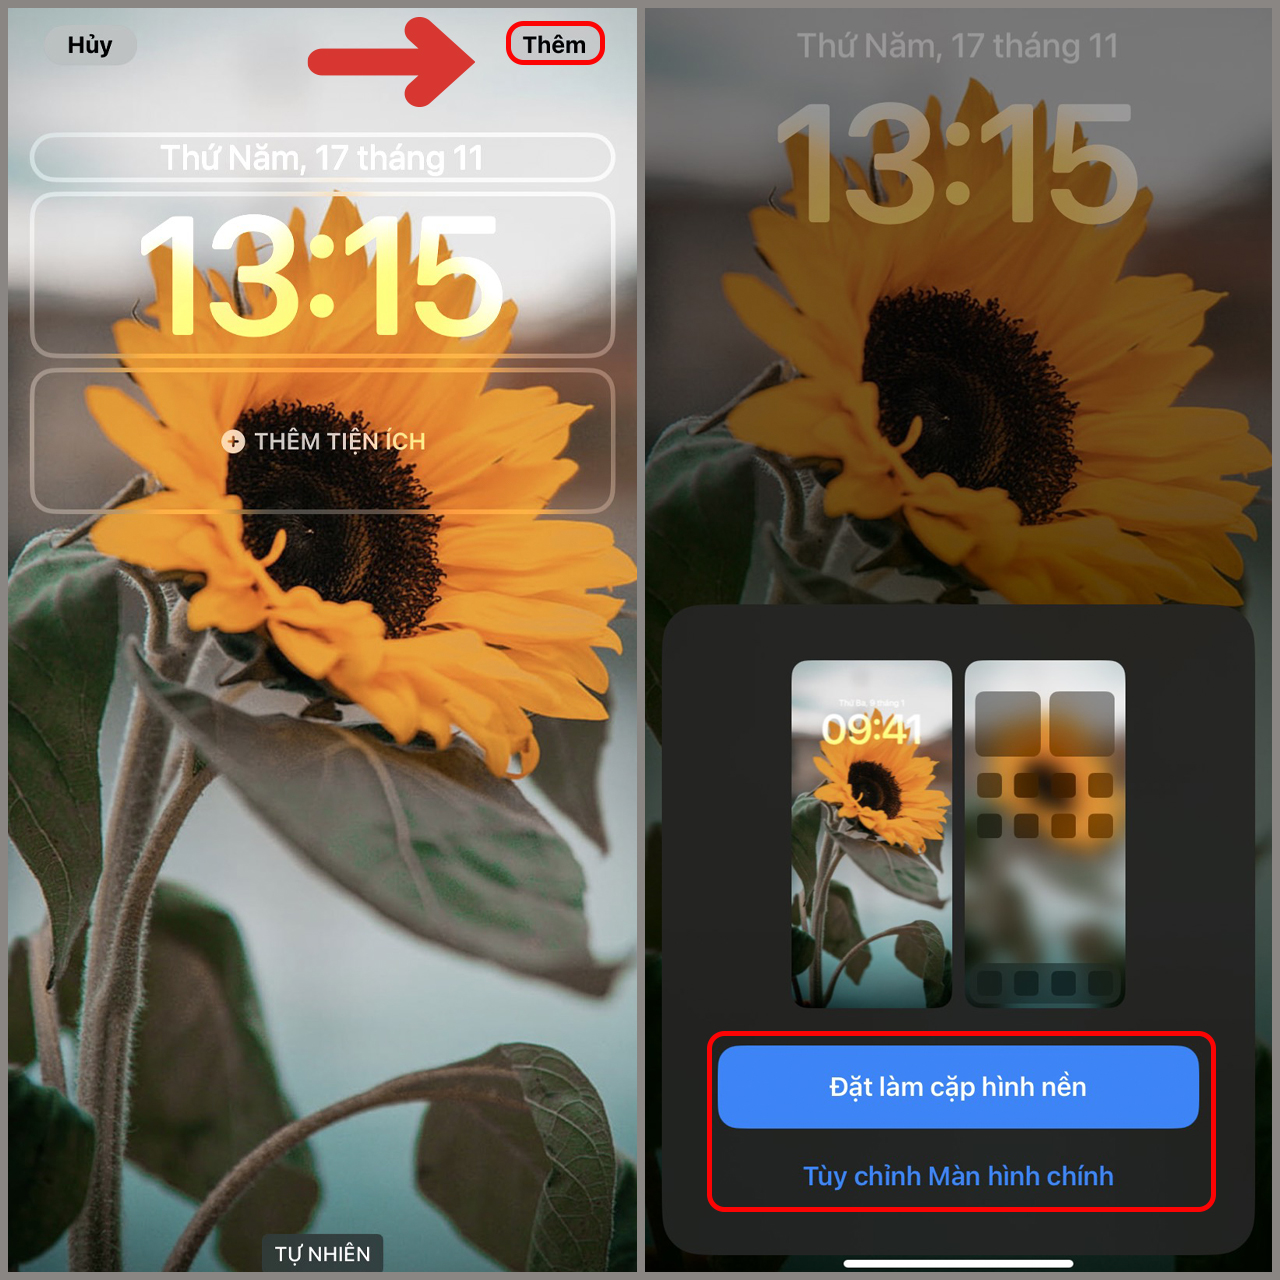 Hình nền iPhone hoa hướng dương chắc chắn sẽ khiến cho màn hình điện thoại của bạn thêm phần tươi mới và sinh động. Với những bông hoa vàng rực, bạn sẽ cảm thấy như mình đang sánh bước cùng thiên nhiên tươi đẹp.